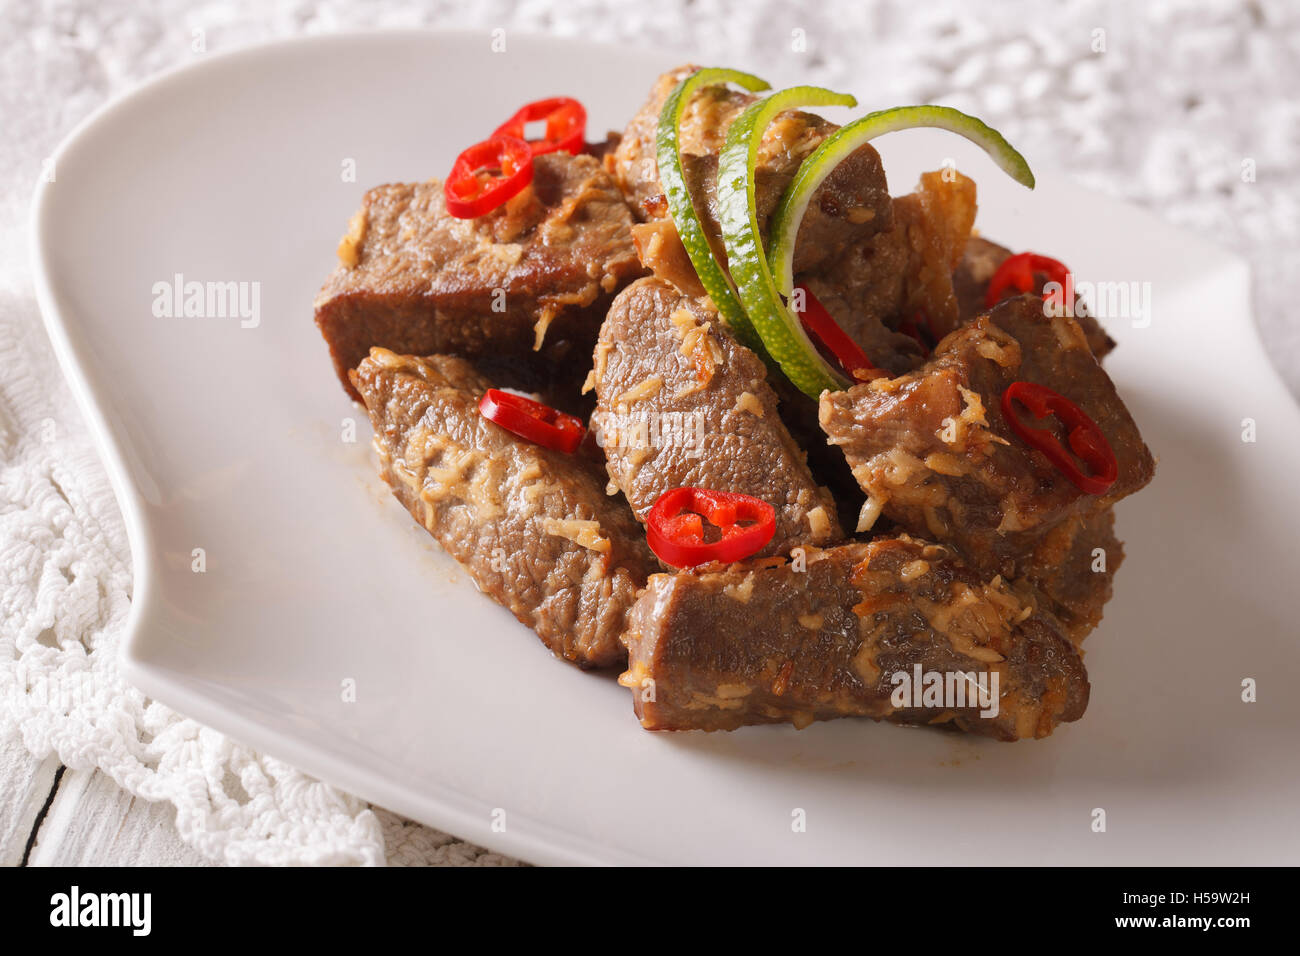 Indonesische Küche: Beef Rendang geschmort in Kokosmilch mit Gewürzen Nahaufnahme auf einer Platte. Horizontale Stockfoto